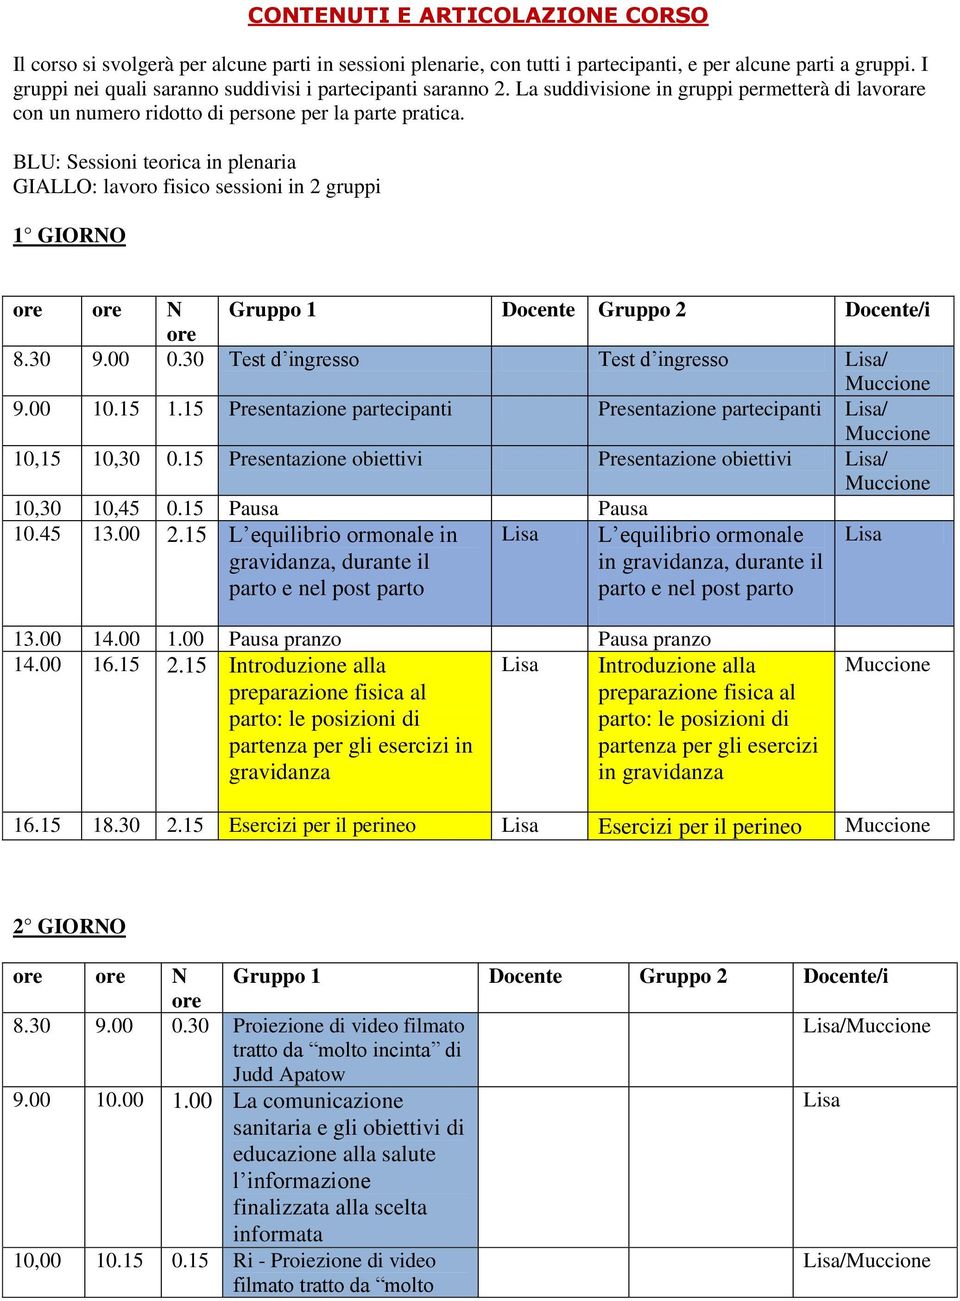 BLU: Sessioni teorica in plenaria GIALLO: lavoro fisico sessioni in 2 gruppi 1 GIORNO ore ore N Gruppo 1 Docente Gruppo 2 Docente/i ore 8.30 9.00 0.30 Test d ingresso Test d ingresso / 9.00 10.15 1.